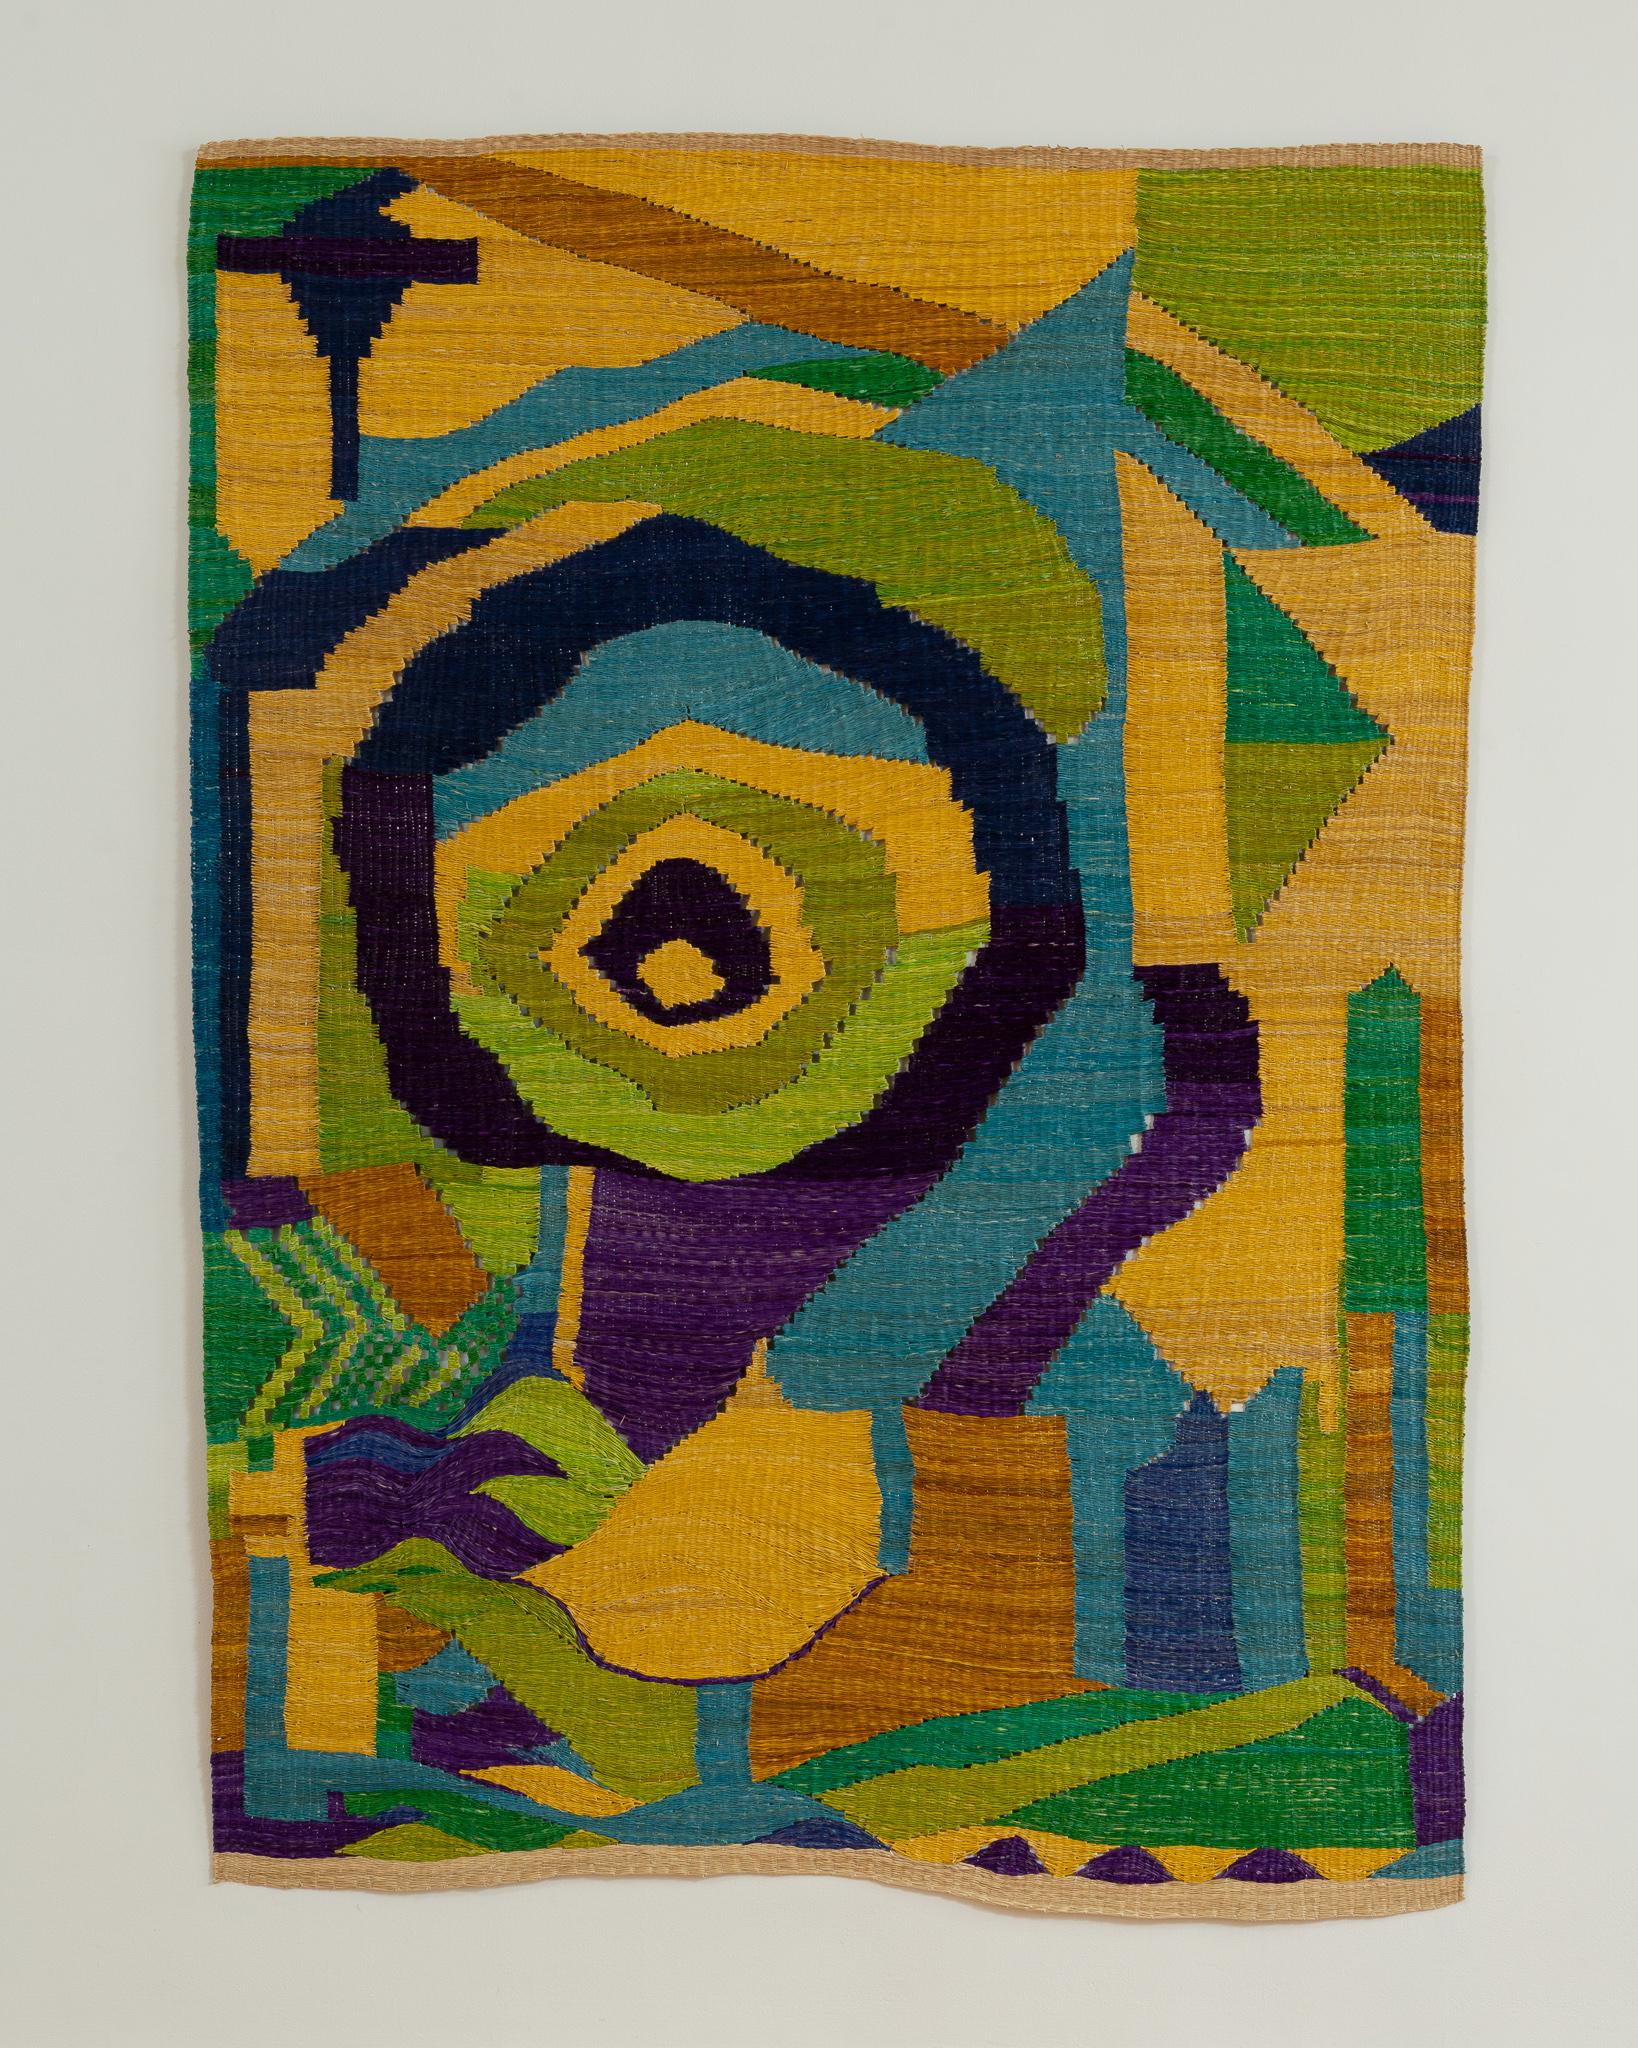 Großer, farbenfroher und einzigartiger handgewebter dekorativer Wandbehang oder Bodenbelag des berühmten Künstlers Chris Wolston aus New York und Medellín. 

Das Stück mit dem Titel 